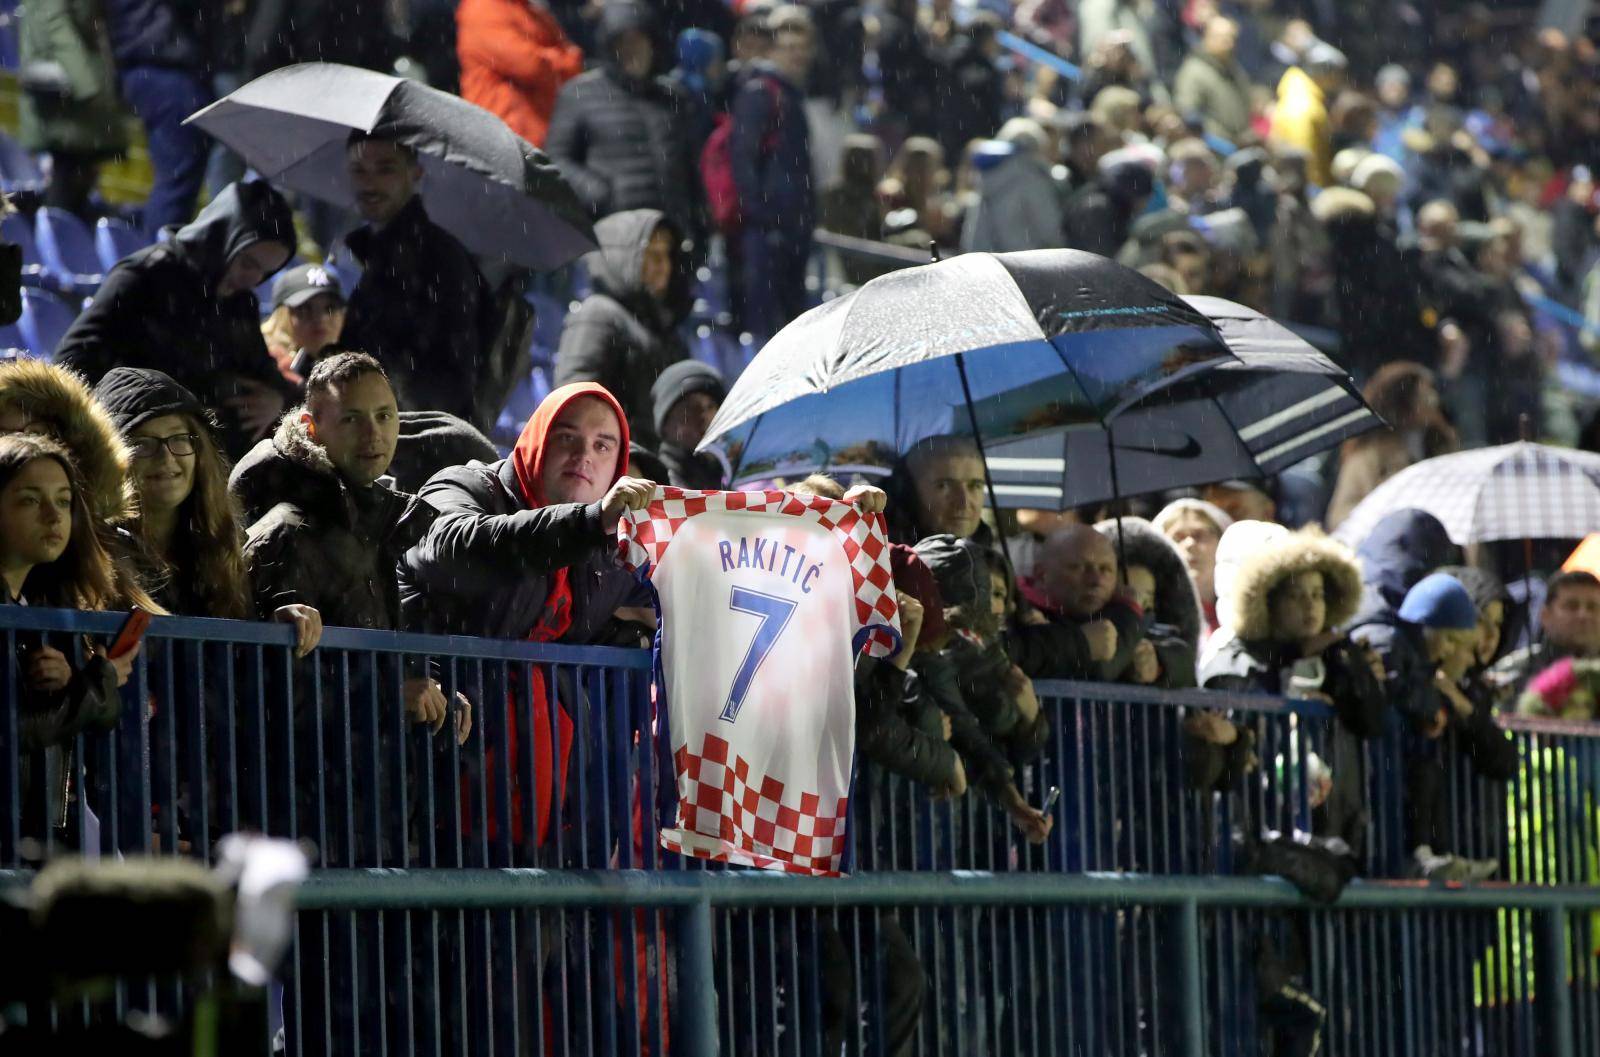 Zagreb: Trening Hrvatske nogometne reprezentacije uoÄi utakmice s AzerbajdÅ¾anom